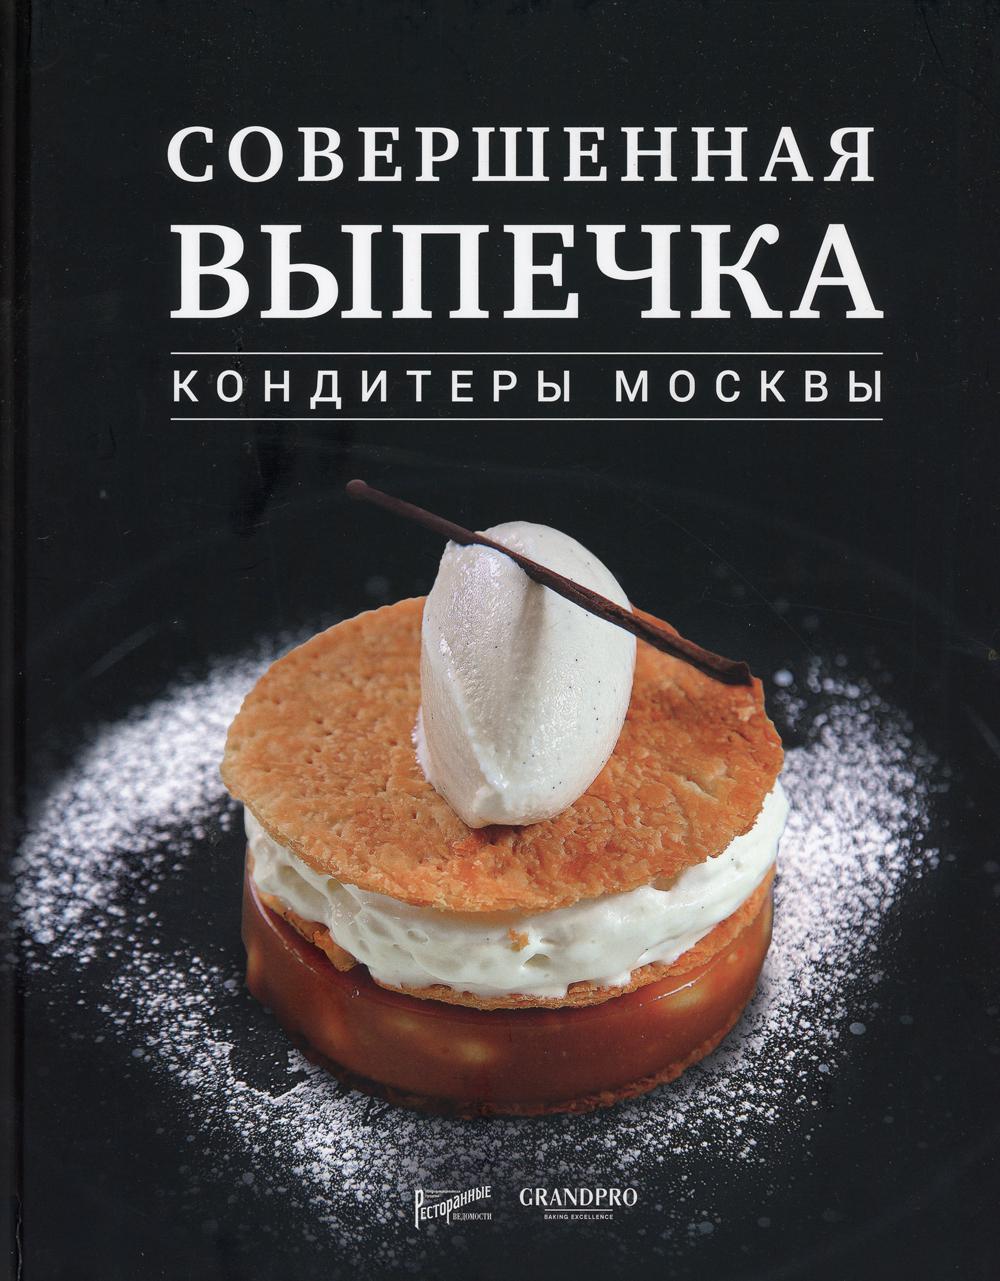 фото Книга совершенная выпечка. кондитеры москвы ресторанные ведомости